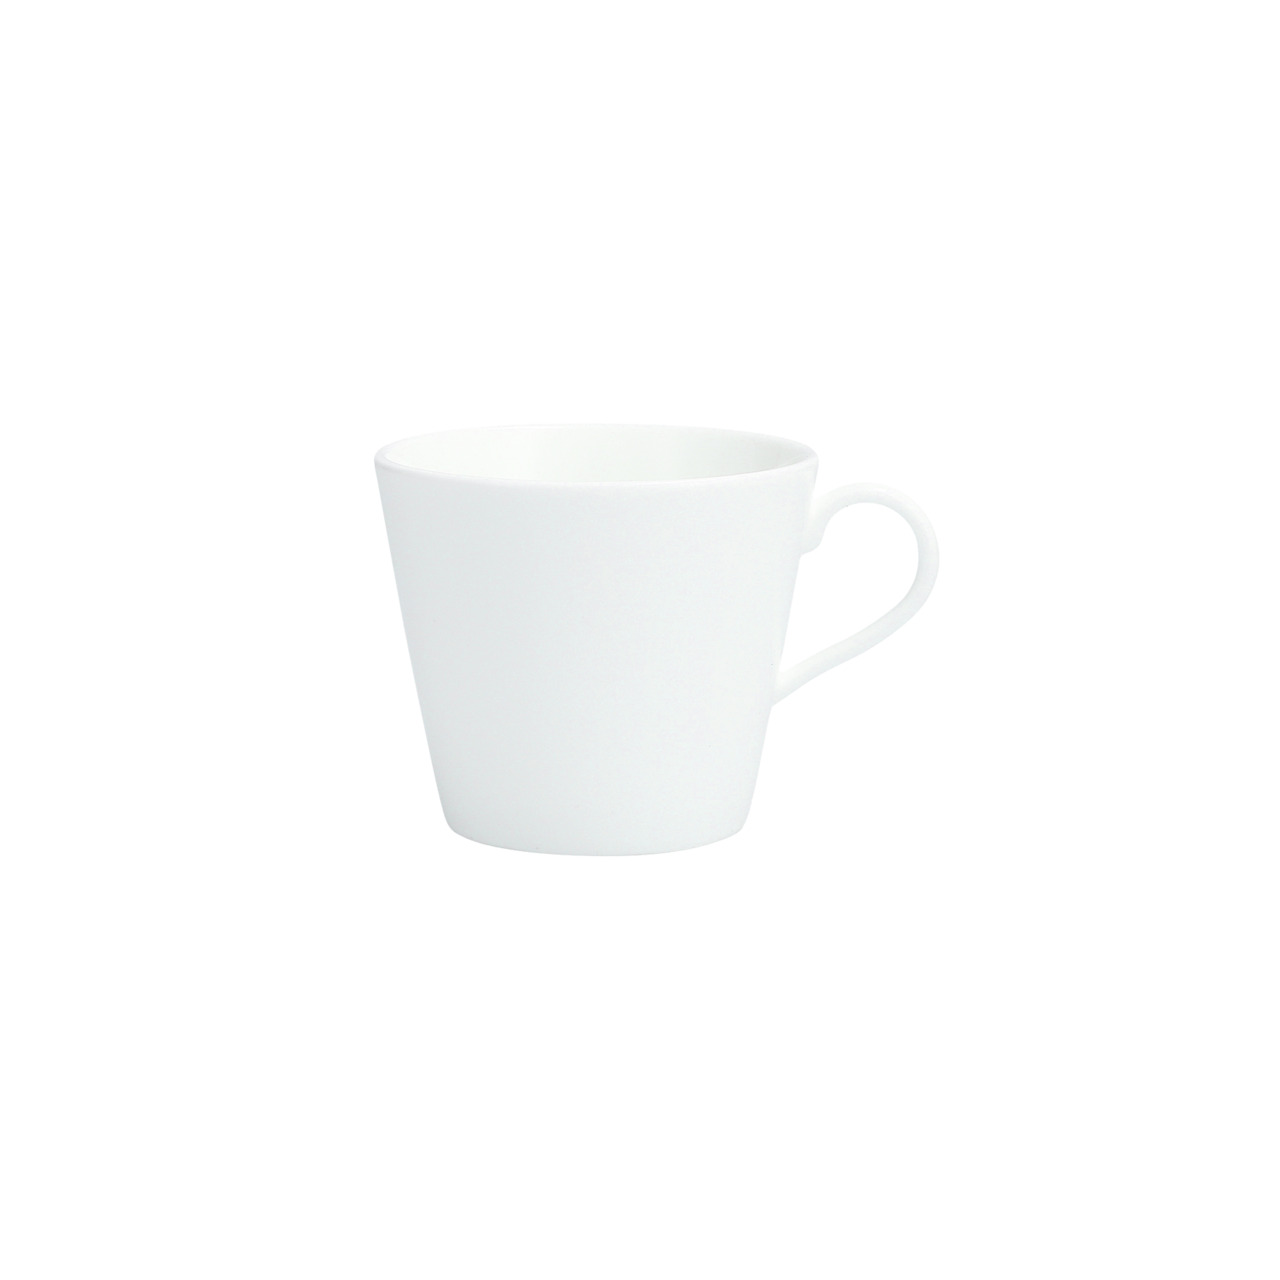 Cielo, Kaffeetasse 0,18 l weiß